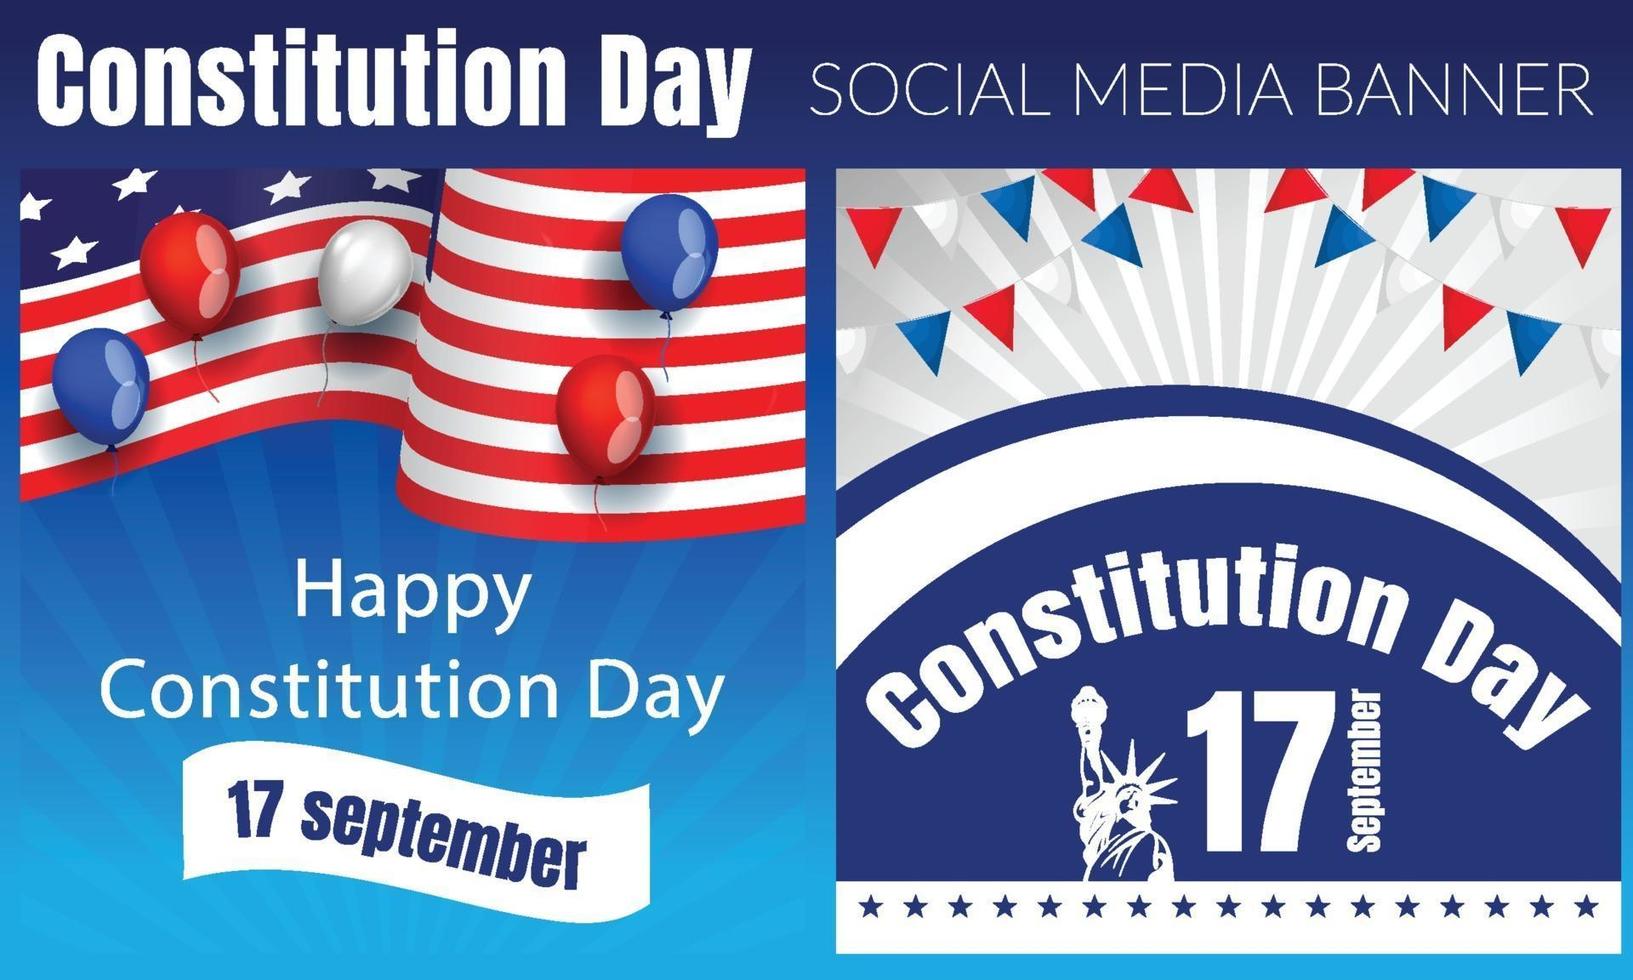 dia da constituição nos estados unidos. patriótico americano. 17 de setembro. vetor